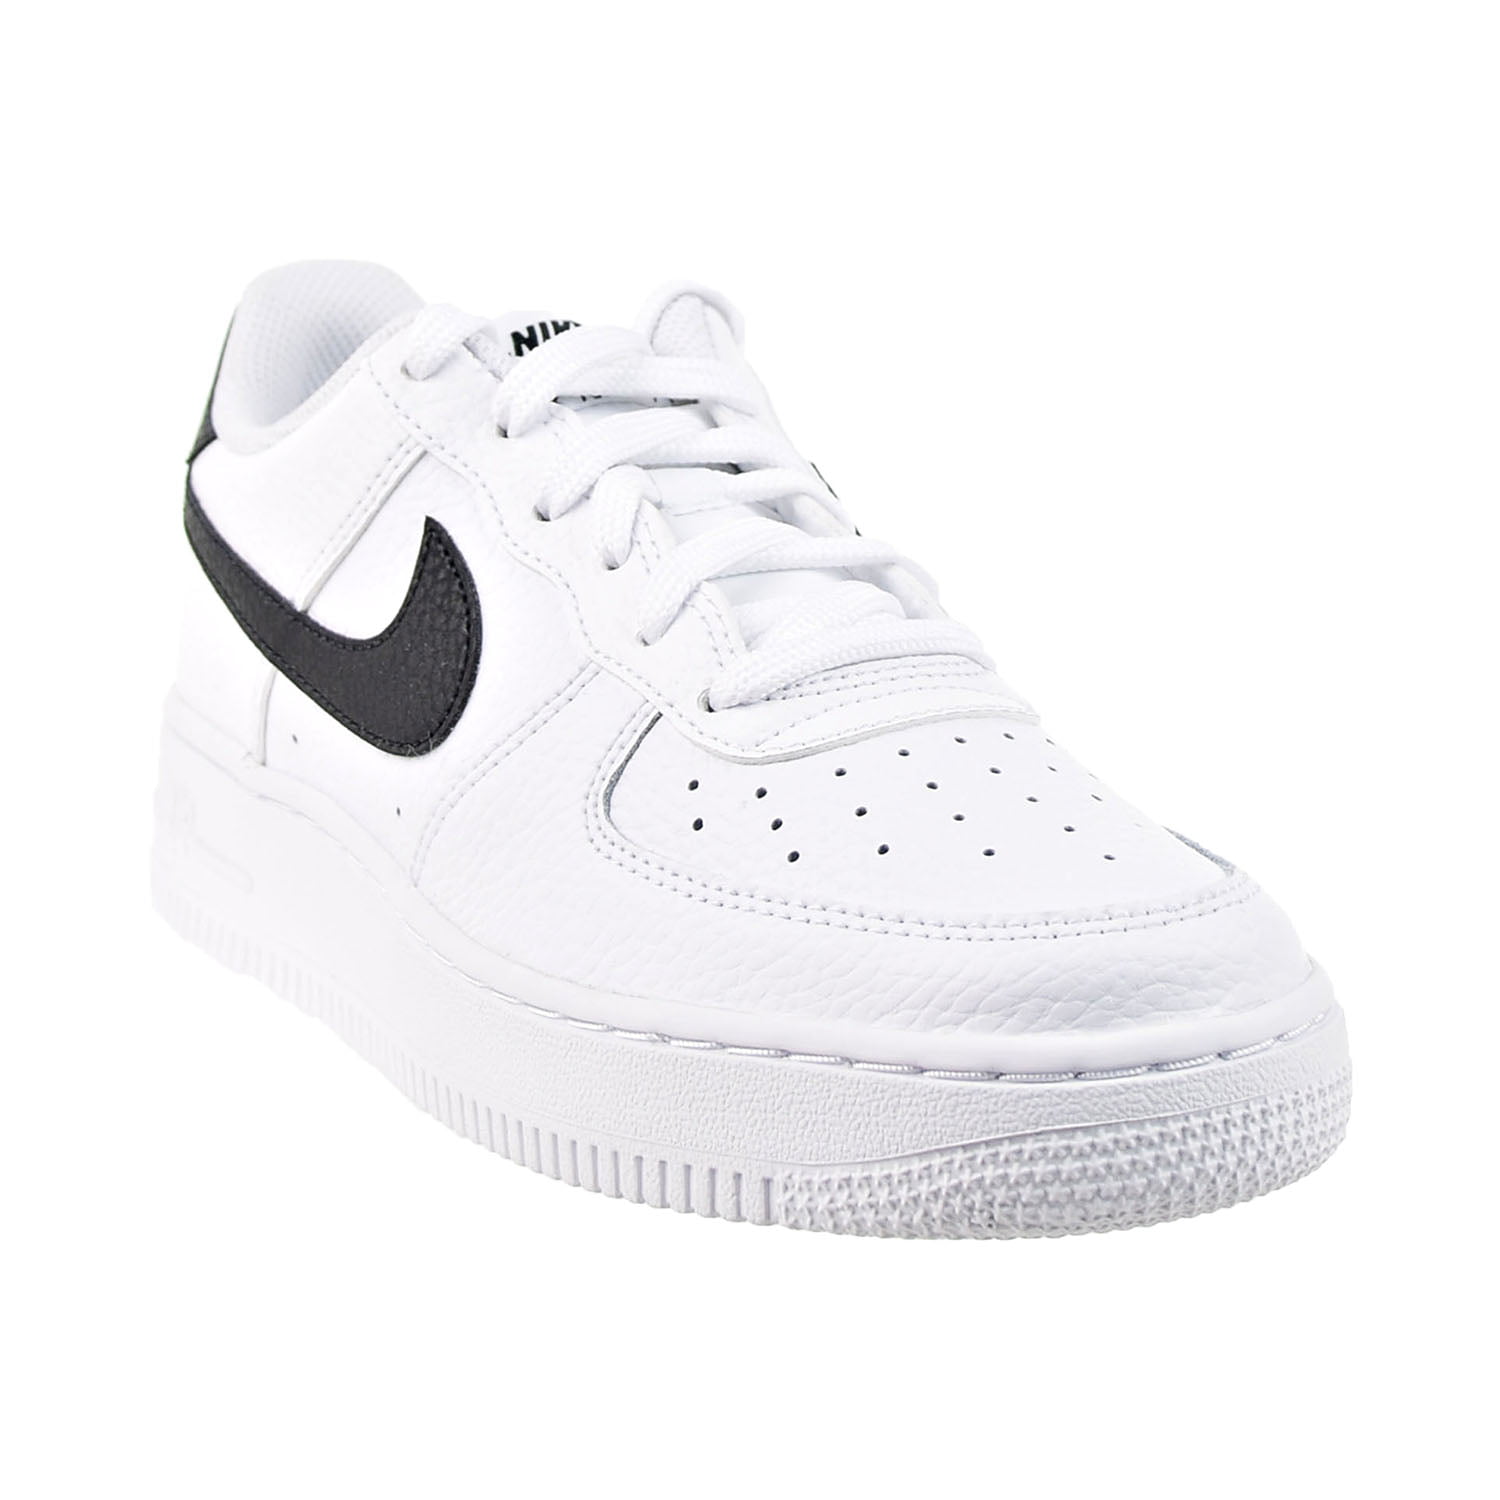  Nike Big Kid's Air Force 1/1 White/Black (CT3840 100) - 4.5